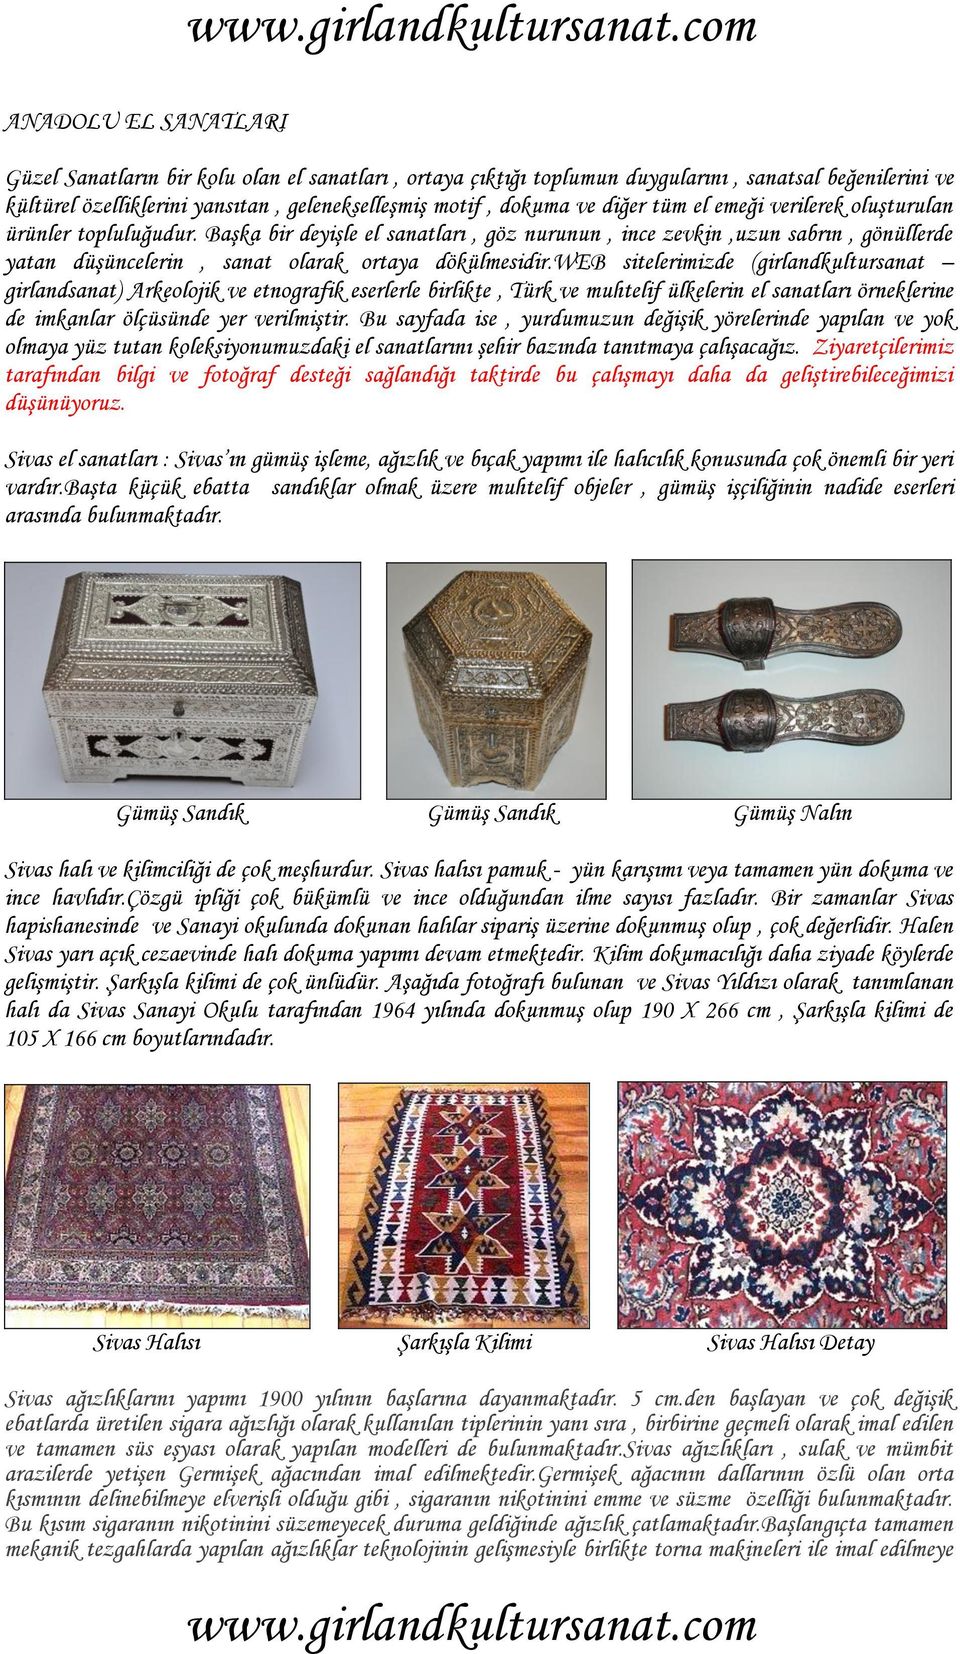 web sitelerimizde (girlandkultursanat girlandsanat) Arkeolojik ve etnografik eserlerle birlikte, Türk ve muhtelif ülkelerin el sanatları örneklerine de imkanlar ölçüsünde yer verilmiştir.